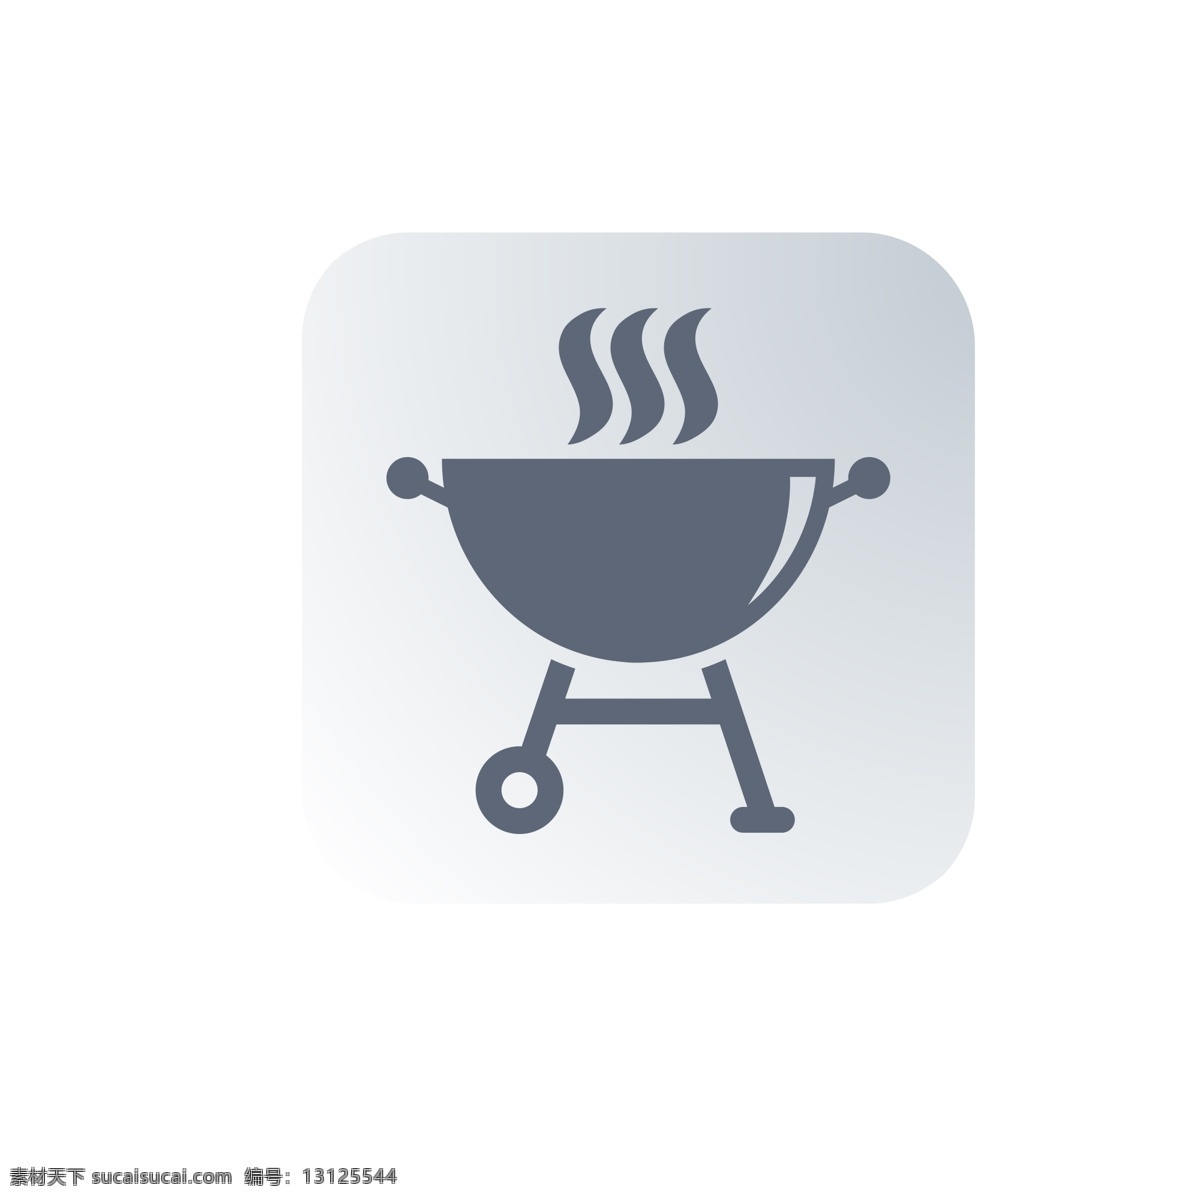 扁平化煮饭 厨具 煮饭 扁平化ui ui图标 手机图标 界面ui 网页ui h5图标